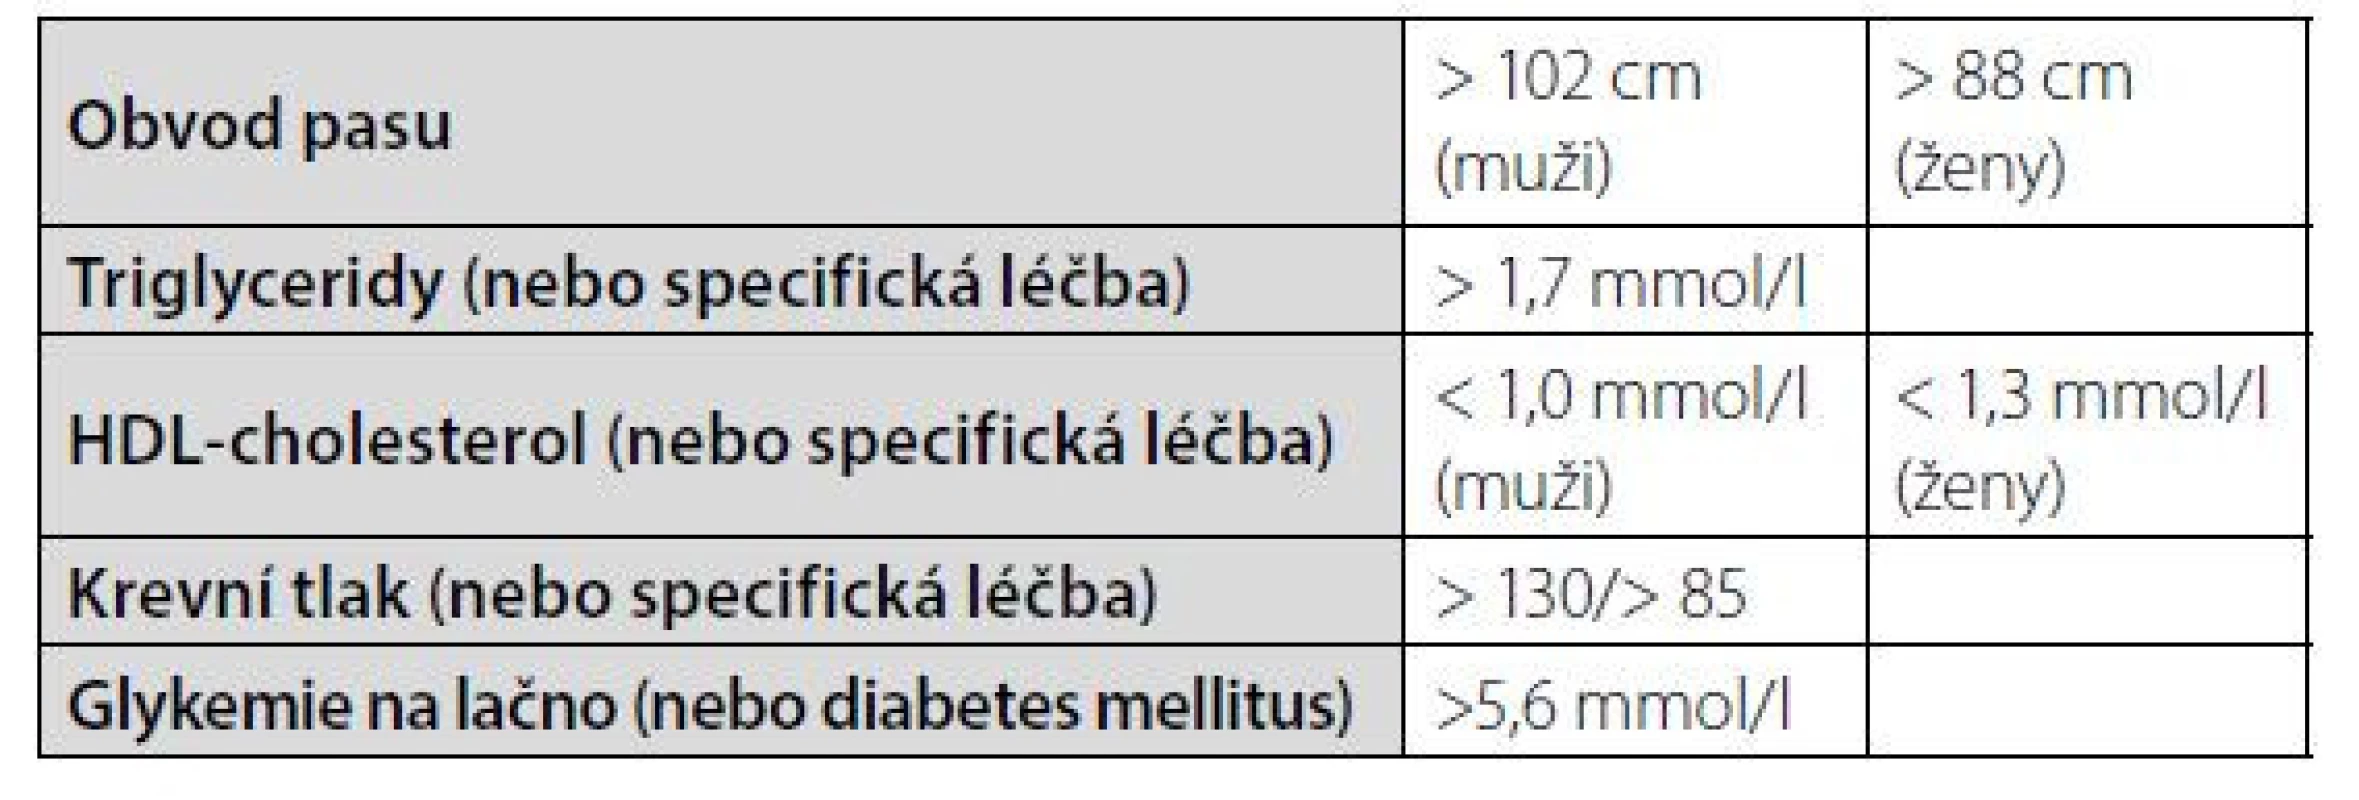 Harmonizovaná definice metabolického syndromu z roku 2009 (4)